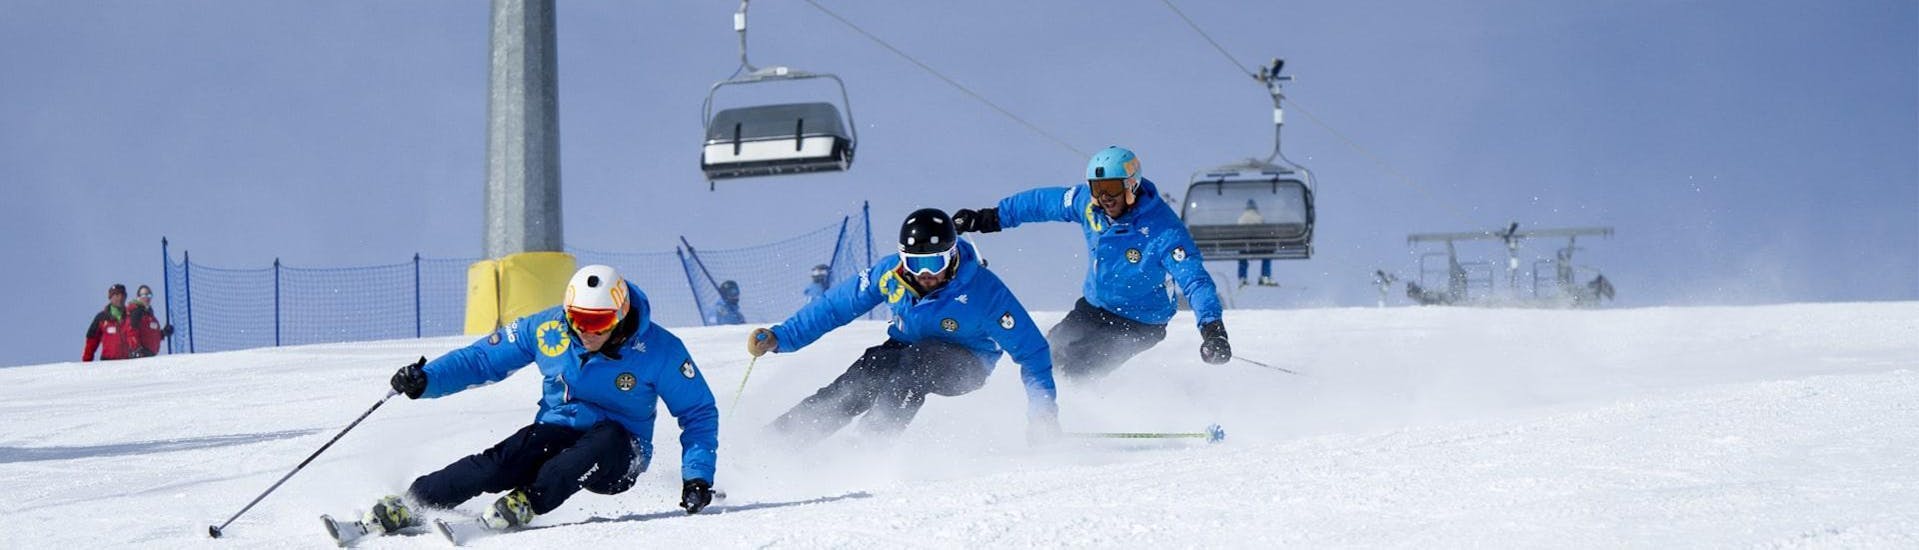 Tres esquiadores descienden la pista gracias a las técnicas aprendidas durante las Clases particulares de esquí para adultos - Todos los niveles de la escuela de esquí Scuola di Sci Azzurra Livigno.